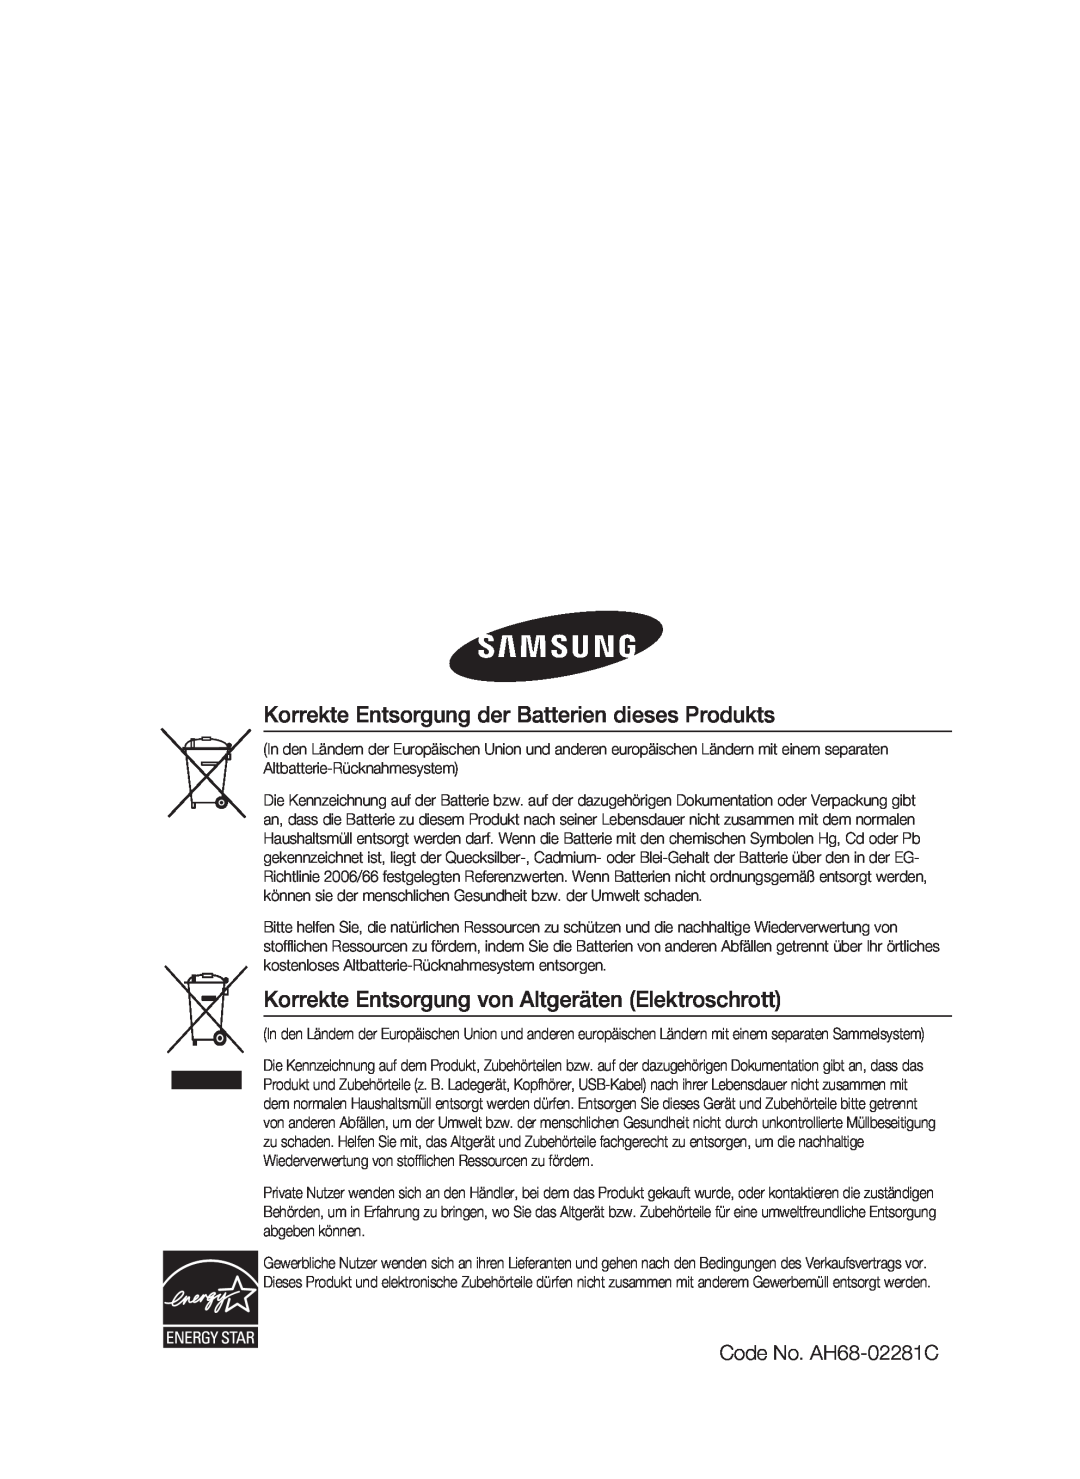 Samsung HT-C6200/XEF Korrekte Entsorgung der Batterien dieses Produkts, Korrekte Entsorgung von Altgeräten Elektroschrott 